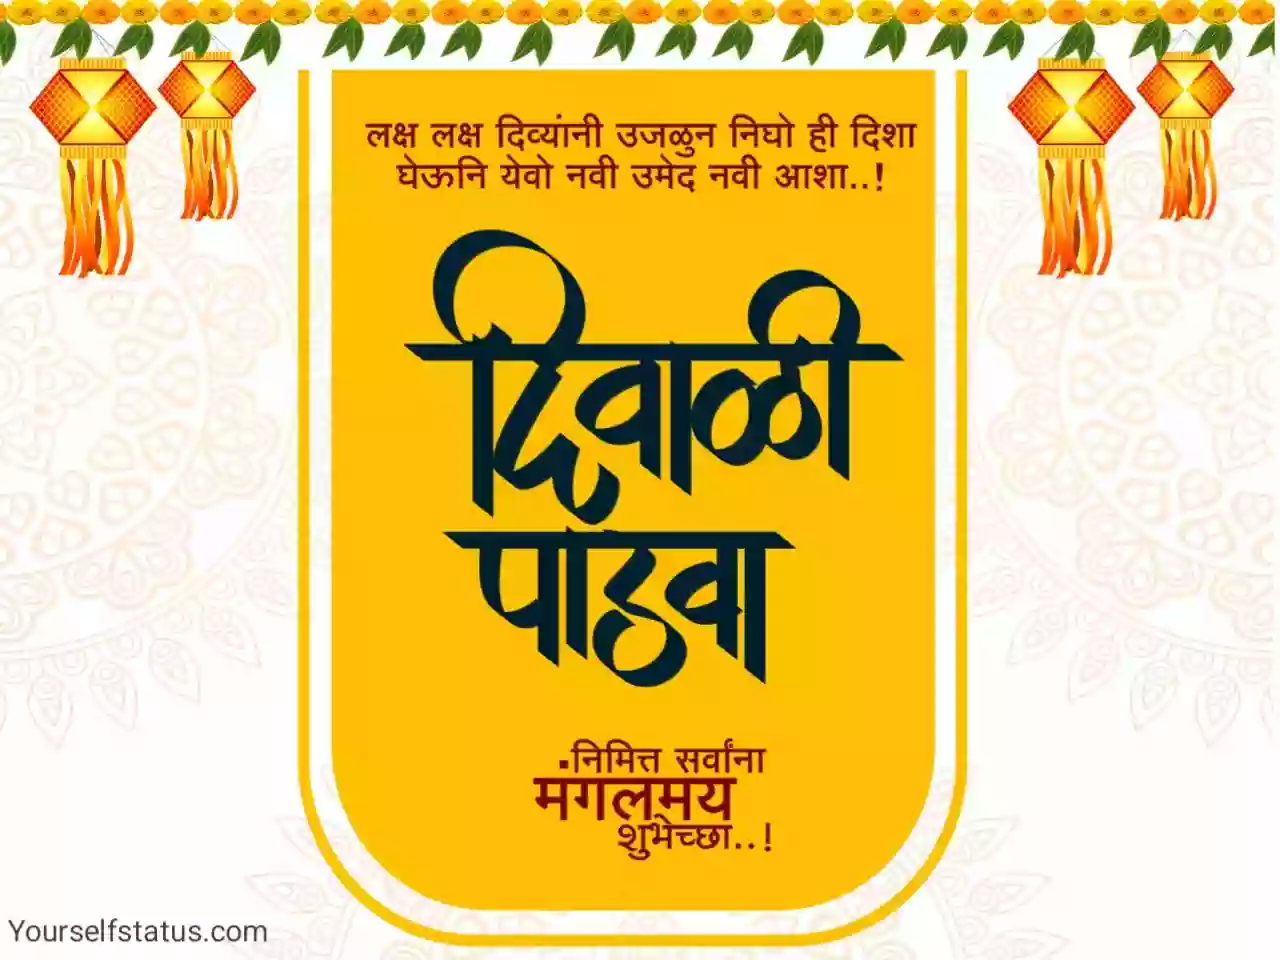 Diwali padwa wishes in marathi